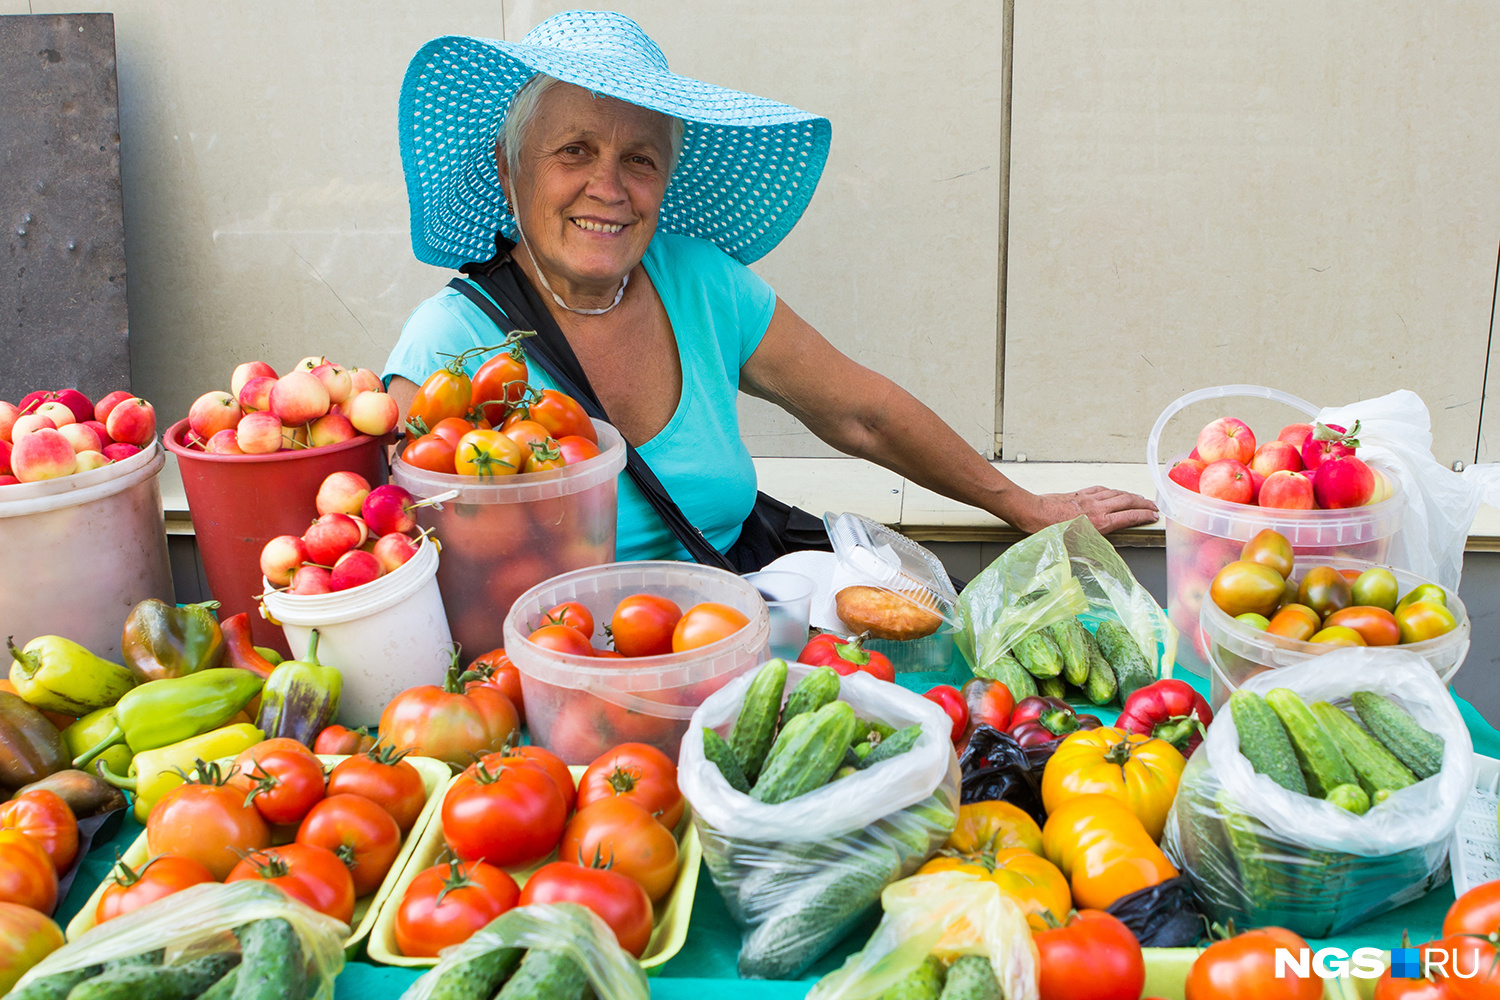 Пенсионеры смогут бесплатно торговать овощами в специально оборудованных лотках